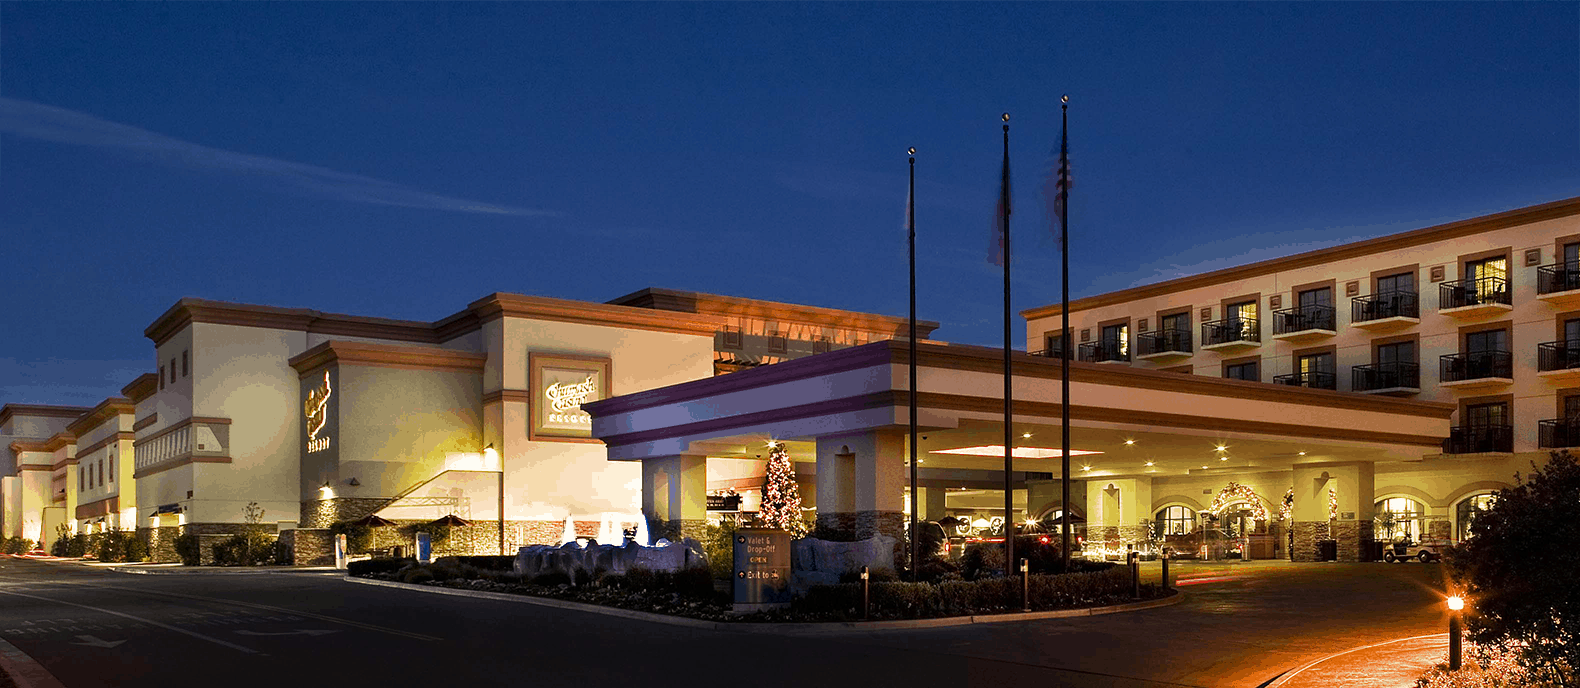 chumash casino resort and hotel